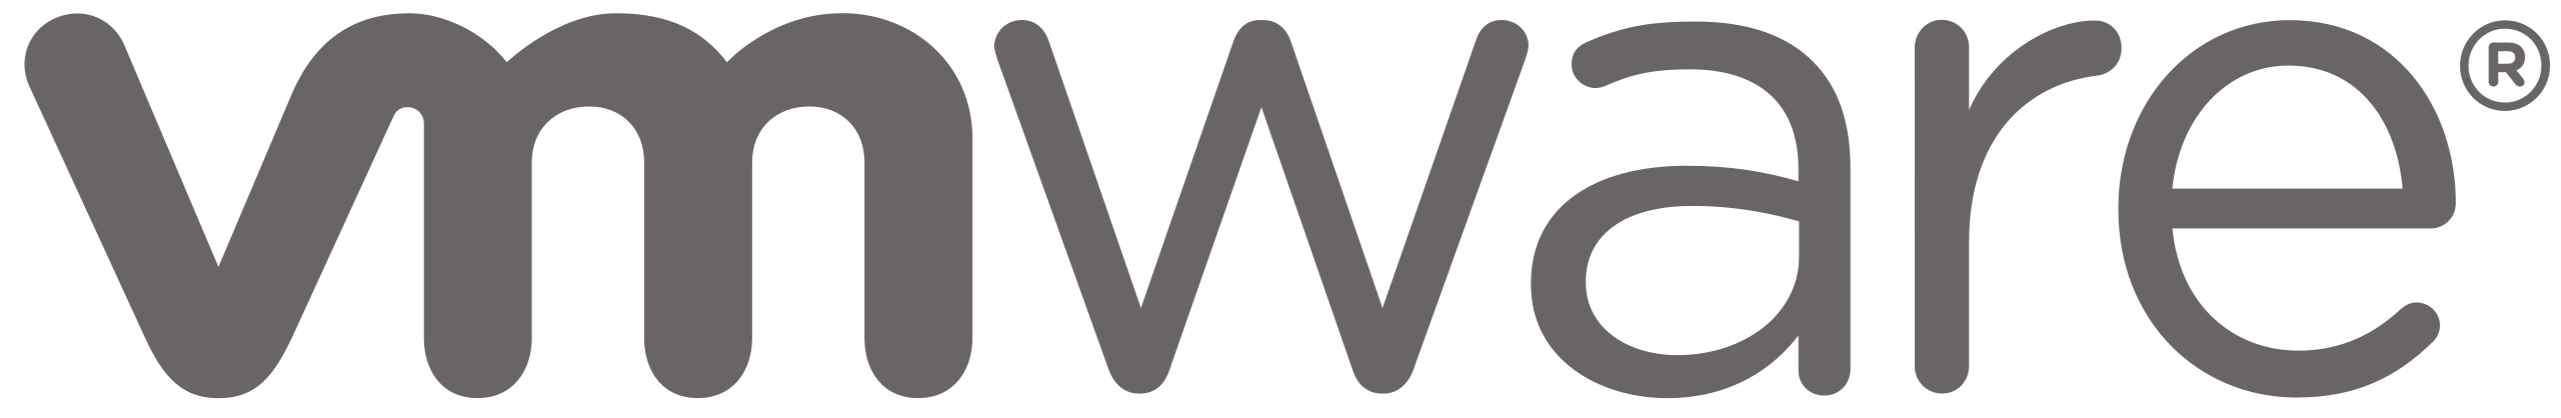 4 logo vmware